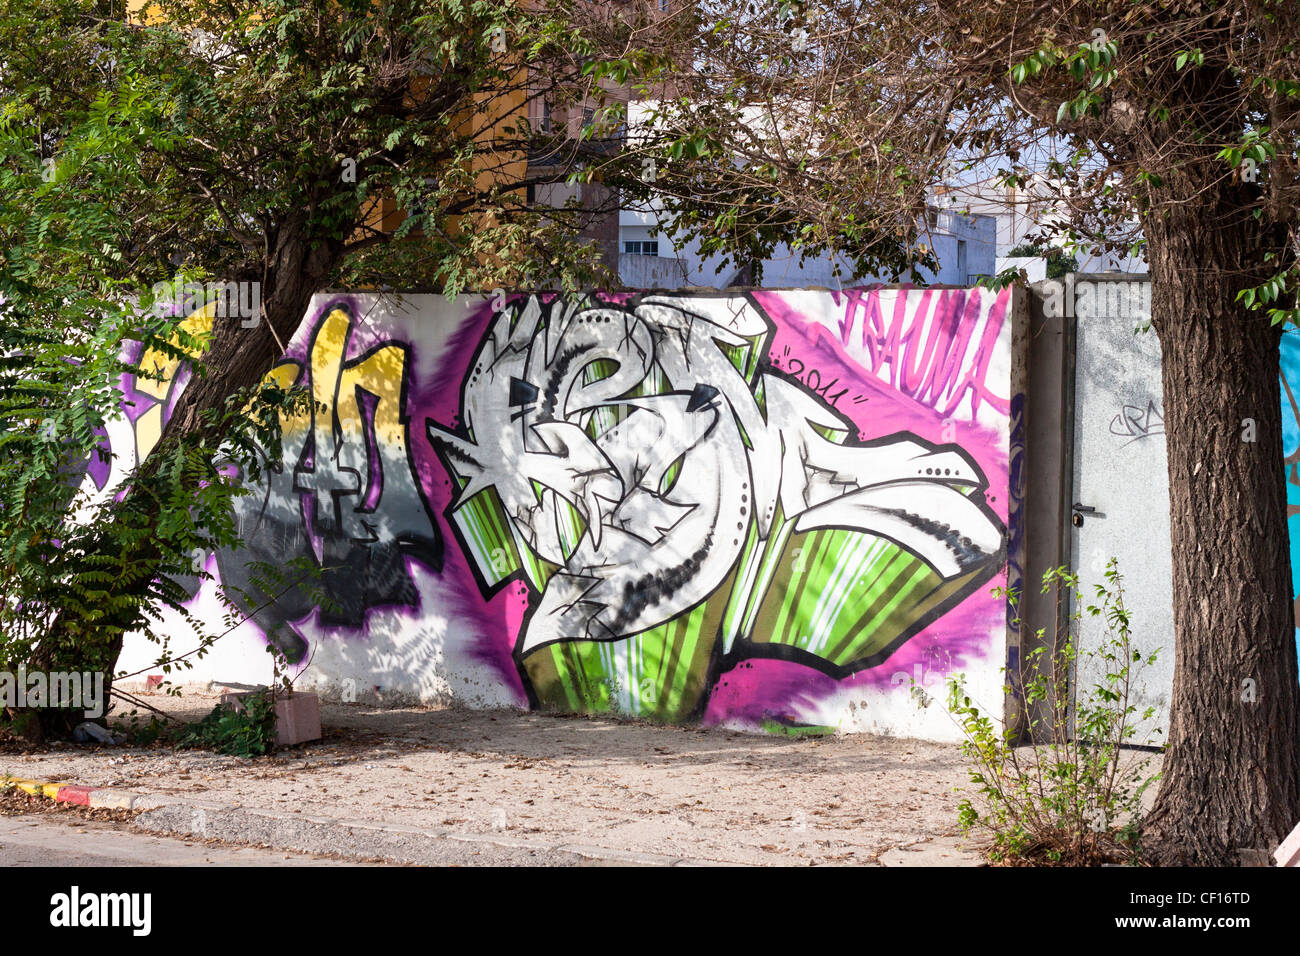 Graffiti street art culture in Spain. La Linea de la Concepcion, Cadiz, Andalusia, Spain. Stock Photo